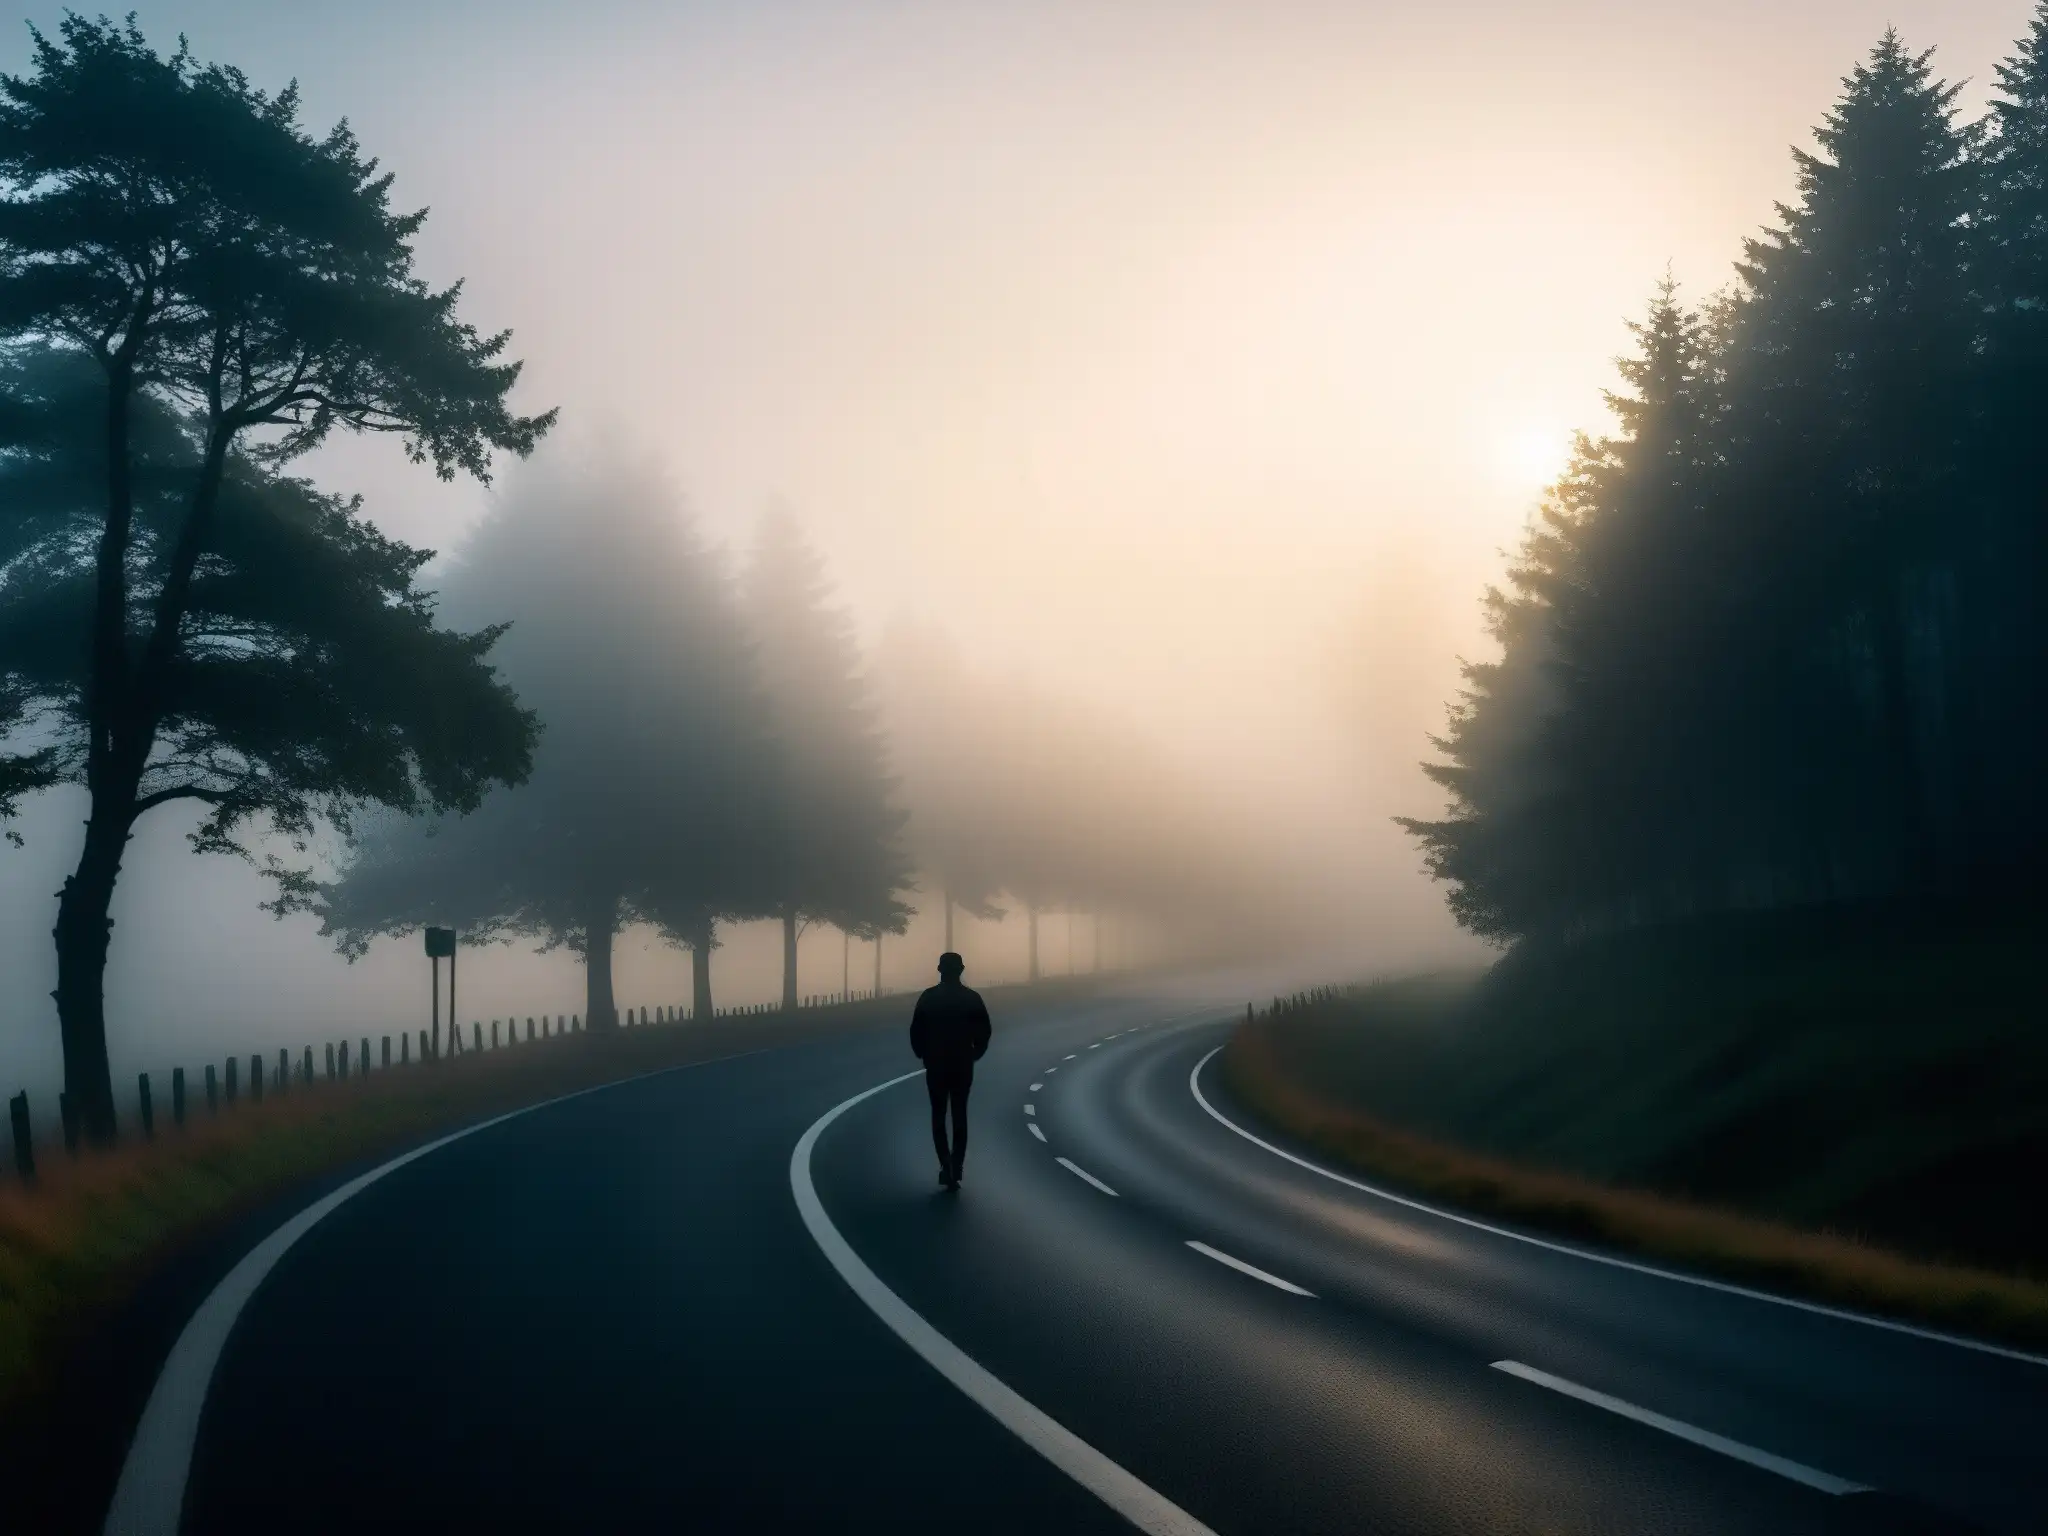 Una carretera serpenteante se pierde en la densa niebla del atardecer, con luces fantasmales y una figura en la distancia